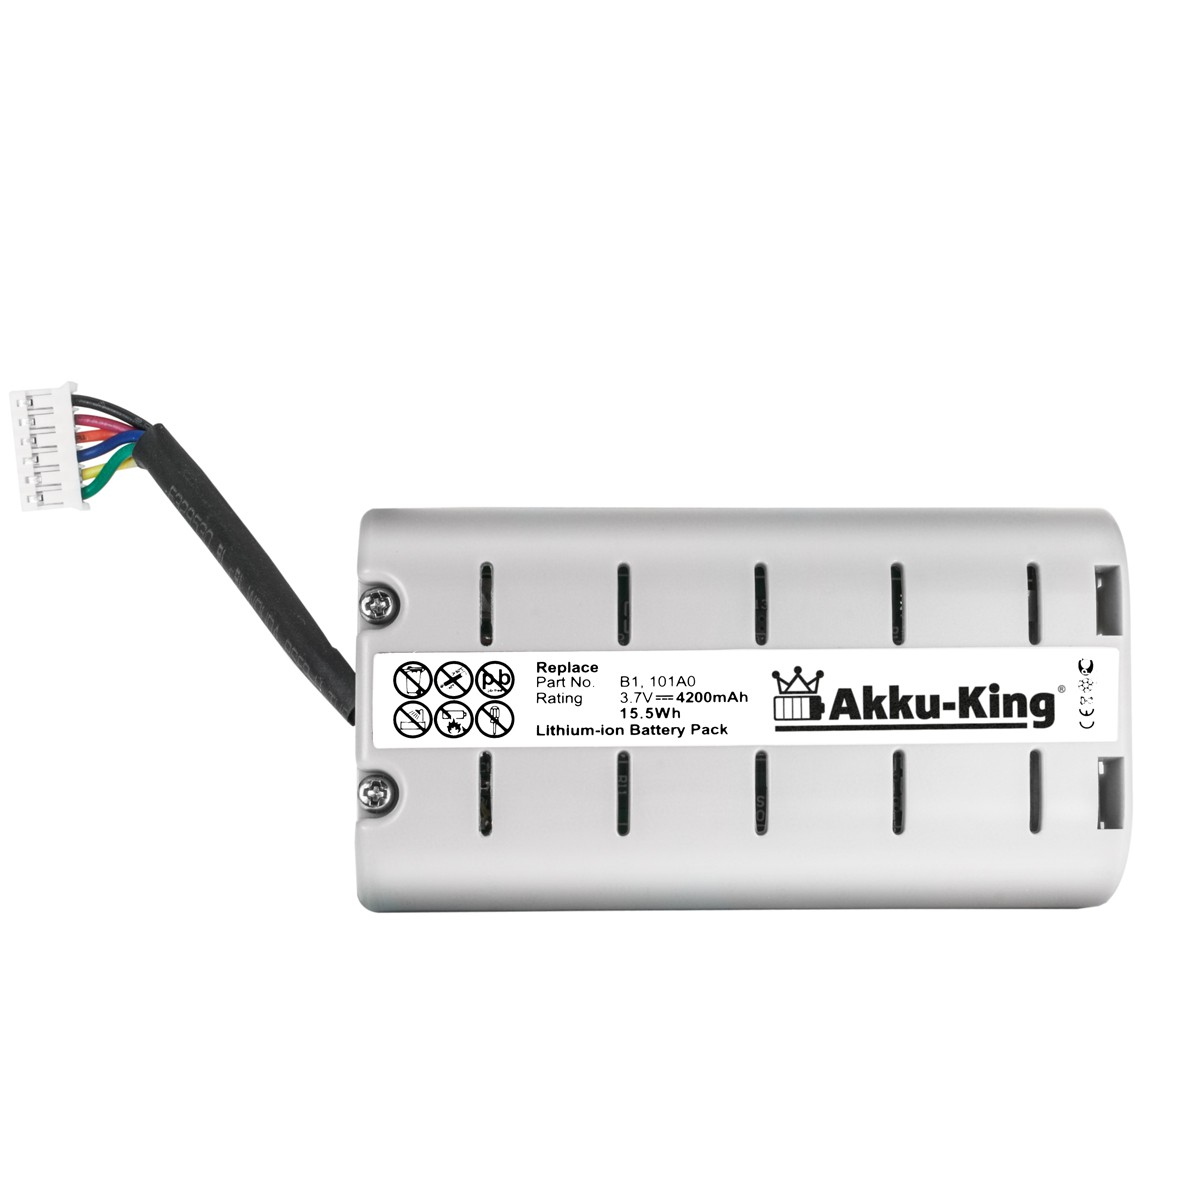 Geräte-Akku, mit ChargePAK Li-Ion Akku Volt, Pure AKKU-KING kompatibel B1 4200mAh 3.7